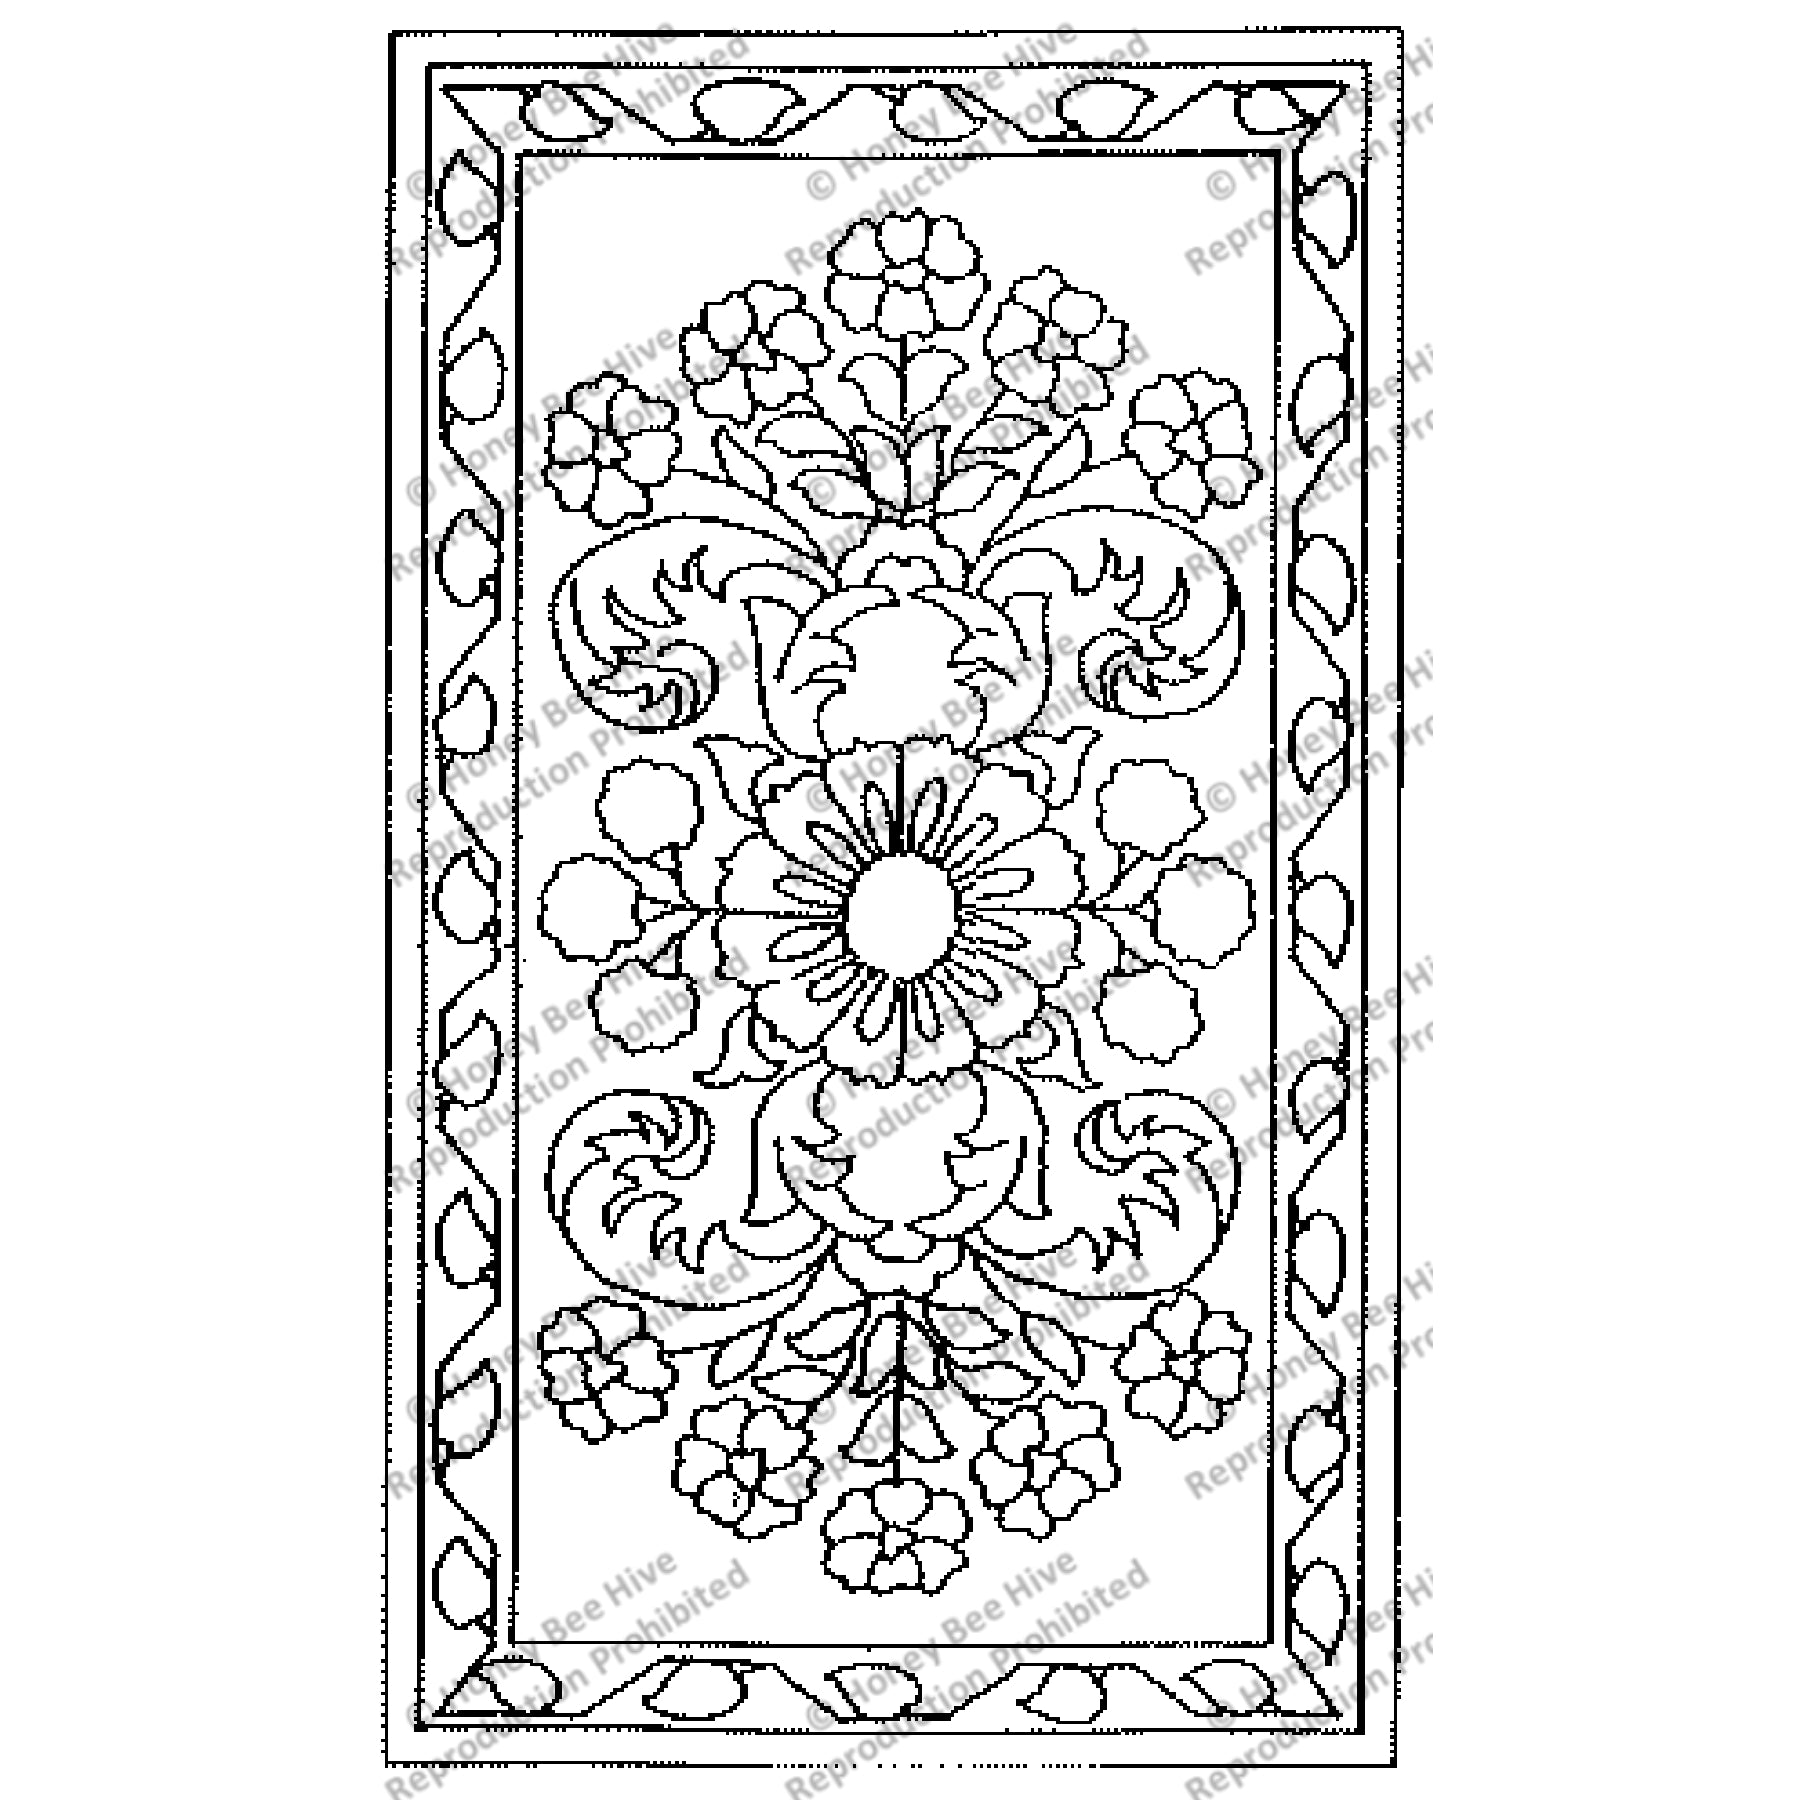 Desert Rose, rug hooking pattern